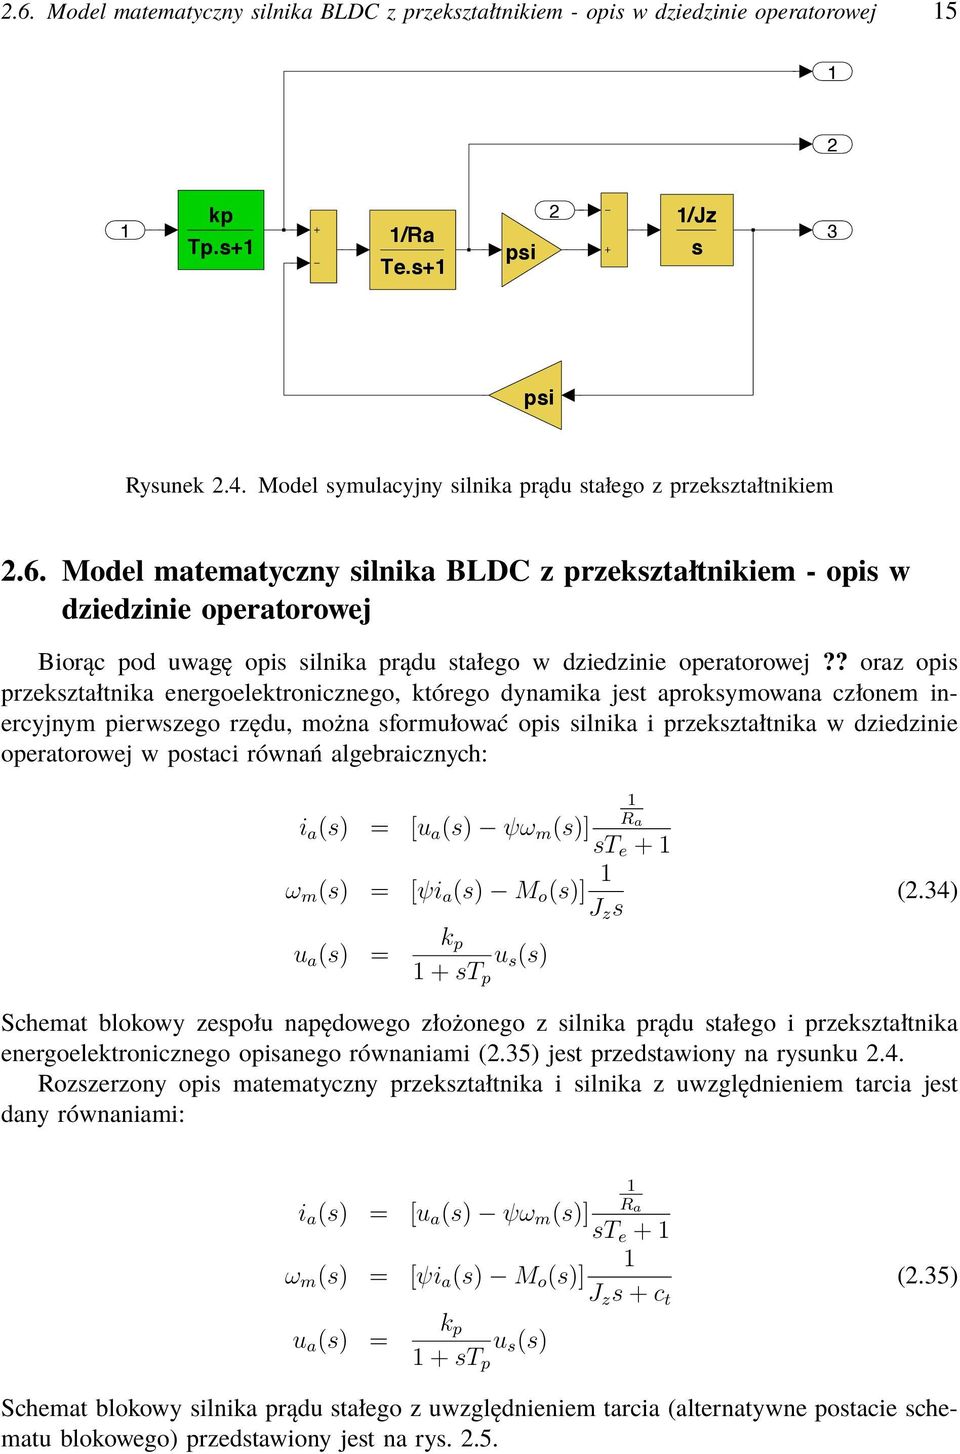 mdl printed 6 Jun 2 2:9 page / 2.6. Model matematyczny silnika BLDC z przekształtnikiem - opis w dziedzinie operatorowej Biorąc pod uwagę opis silnika prądu stałego w dziedzinie operatorowej?